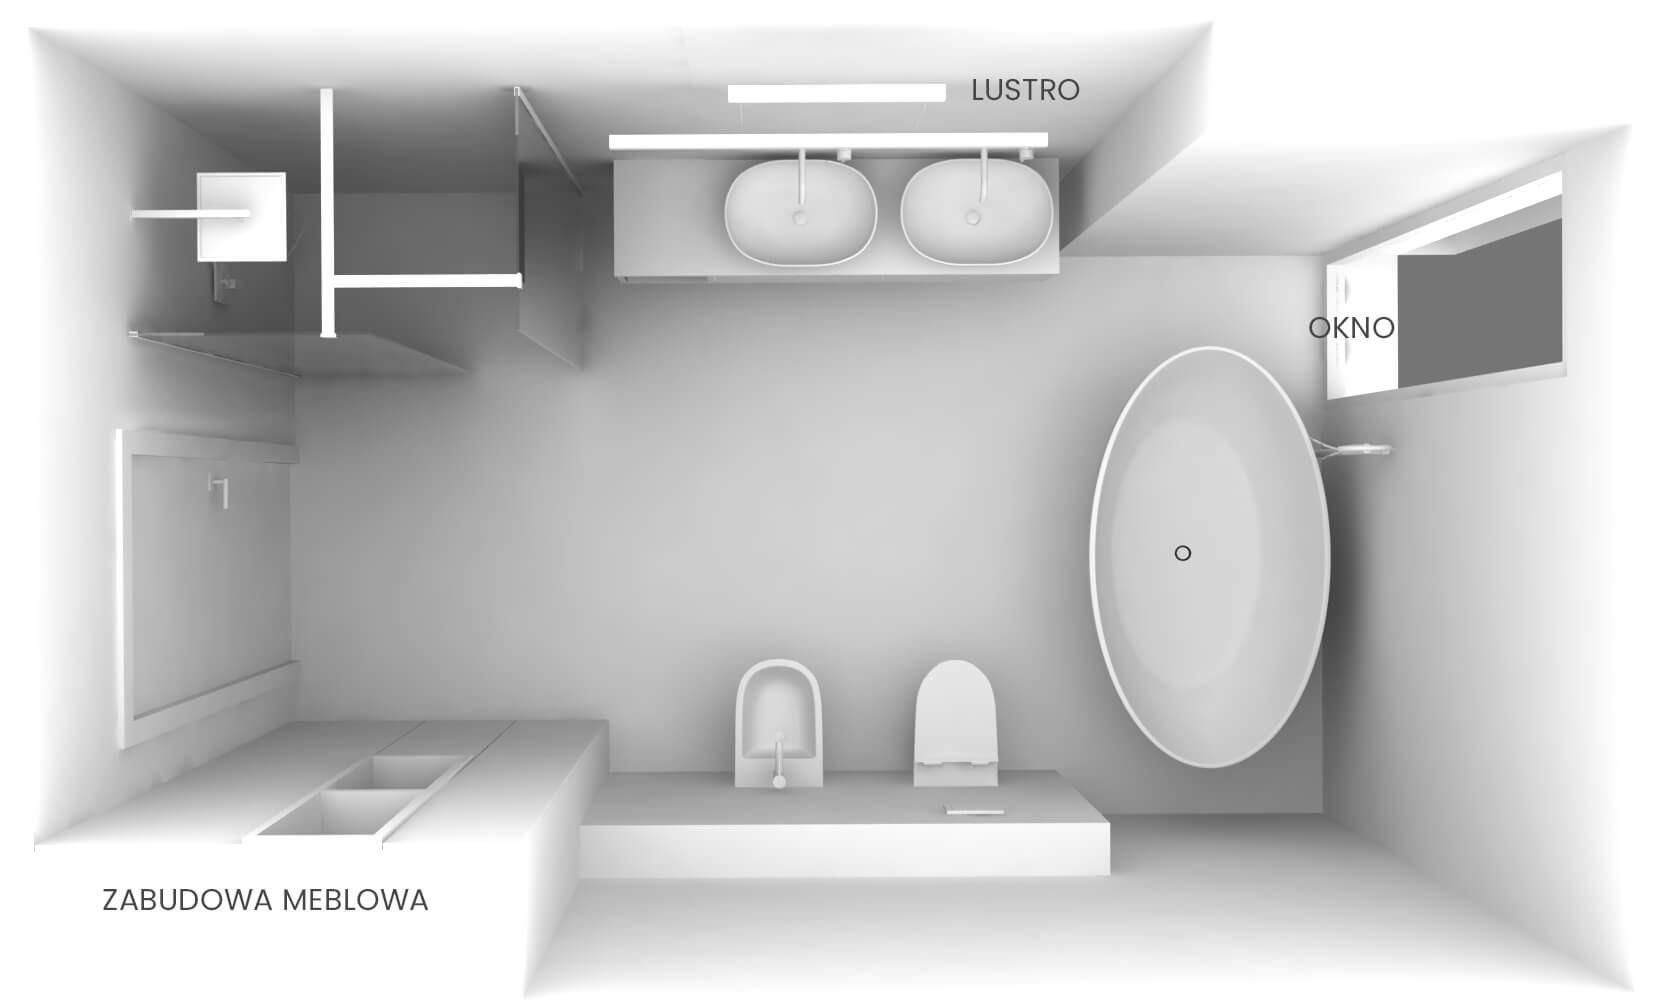 Aranżacja nowoczesnej łazienki – rzut z rozmieszczeniem urządzeń sanitarnych - HomeKONCEPT.shop